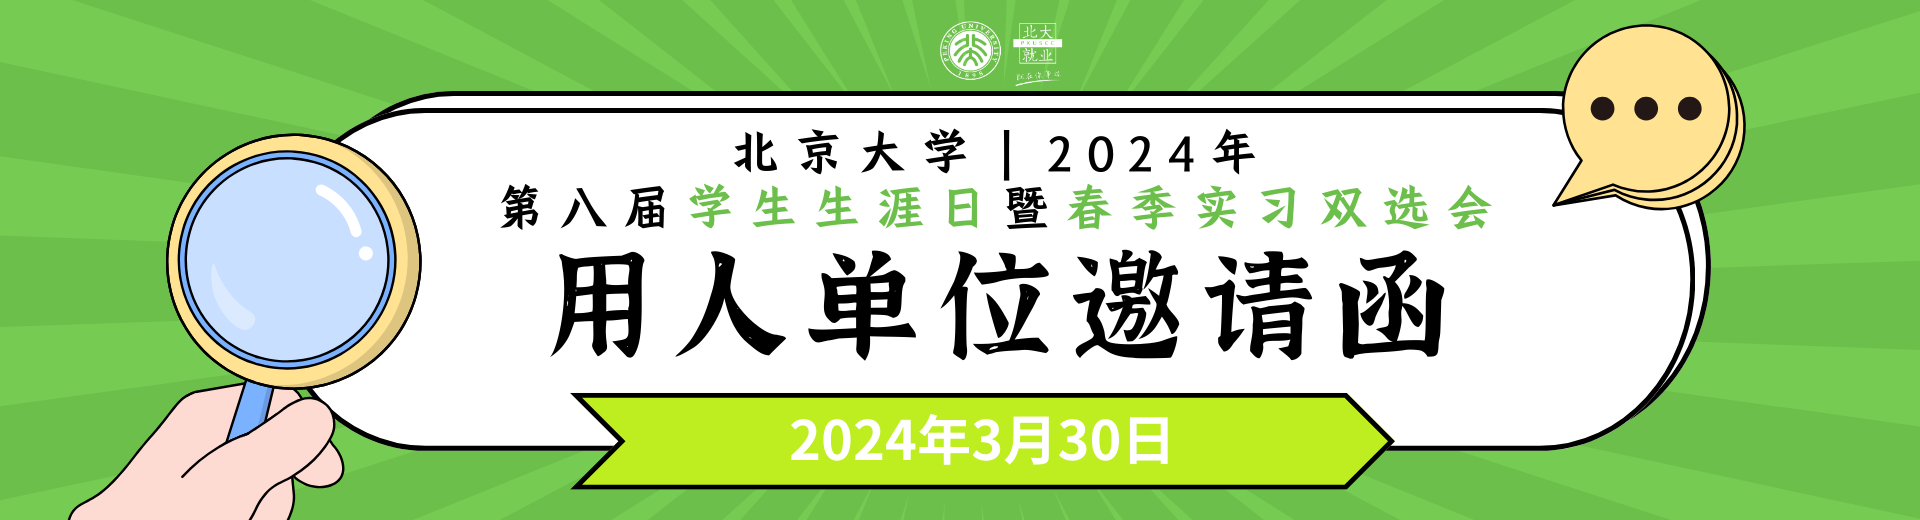 北京大学2024年第八届学生生涯日暨春季实习双选会